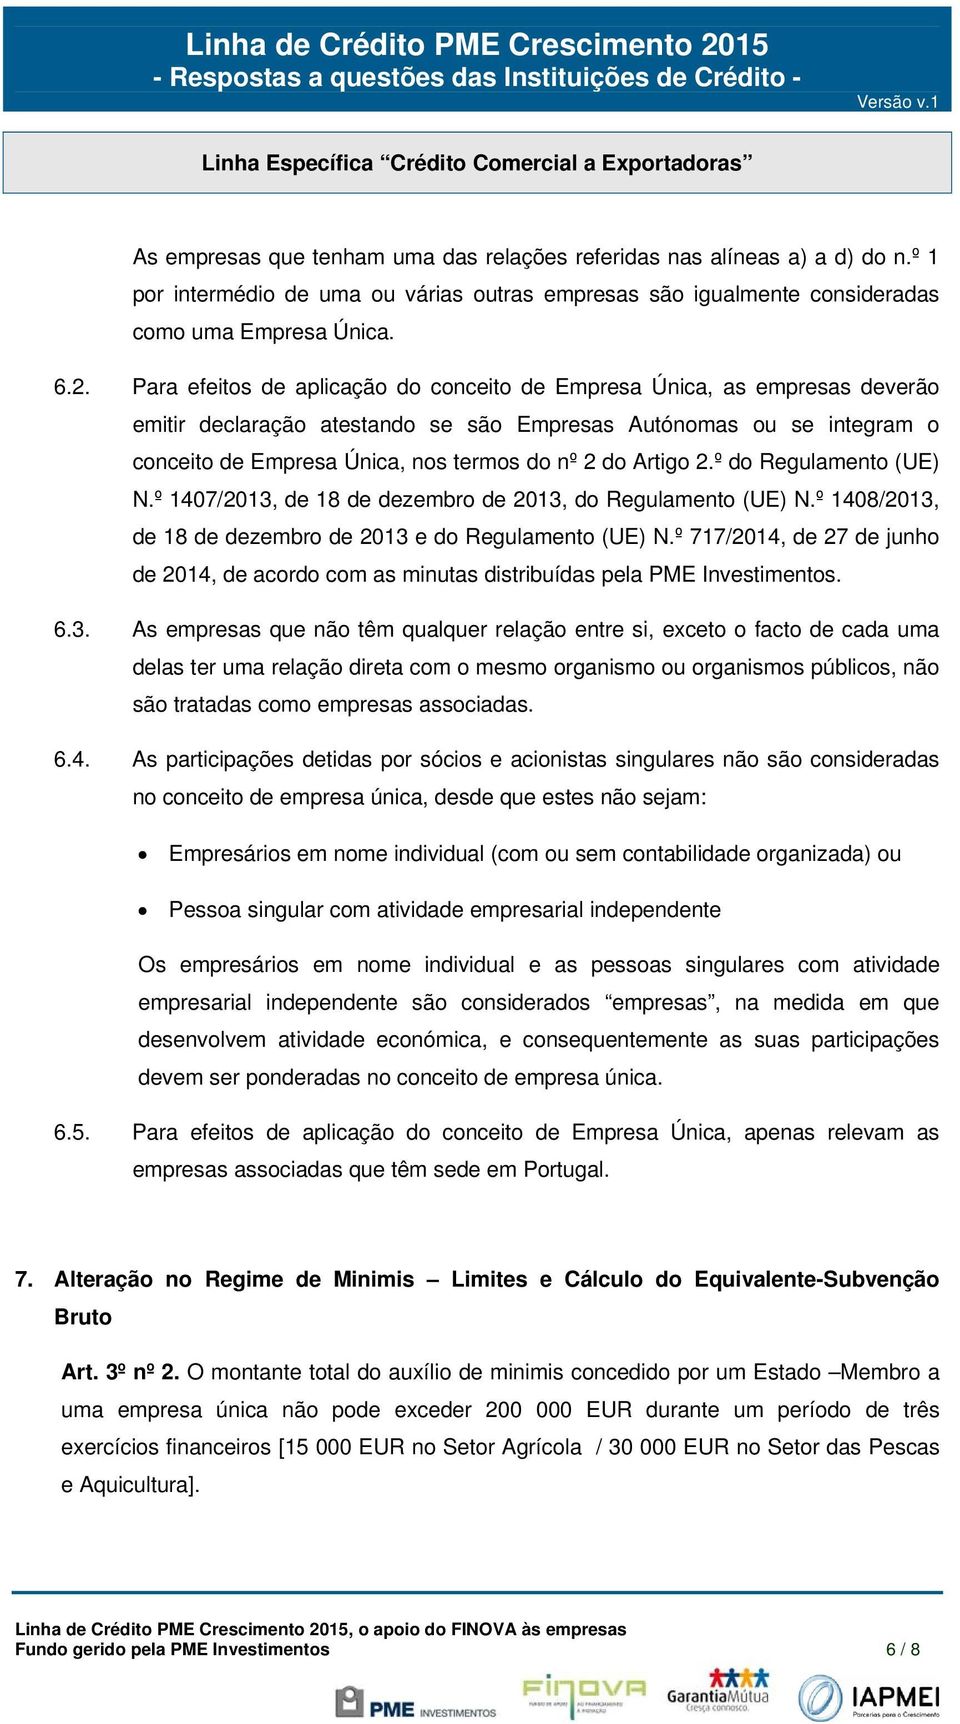 Artigo 2.º do Regulamento (UE) N.º 1407/2013, de 18 de dezembro de 2013, do Regulamento (UE) N.º 1408/2013, de 18 de dezembro de 2013 e do Regulamento (UE) N.